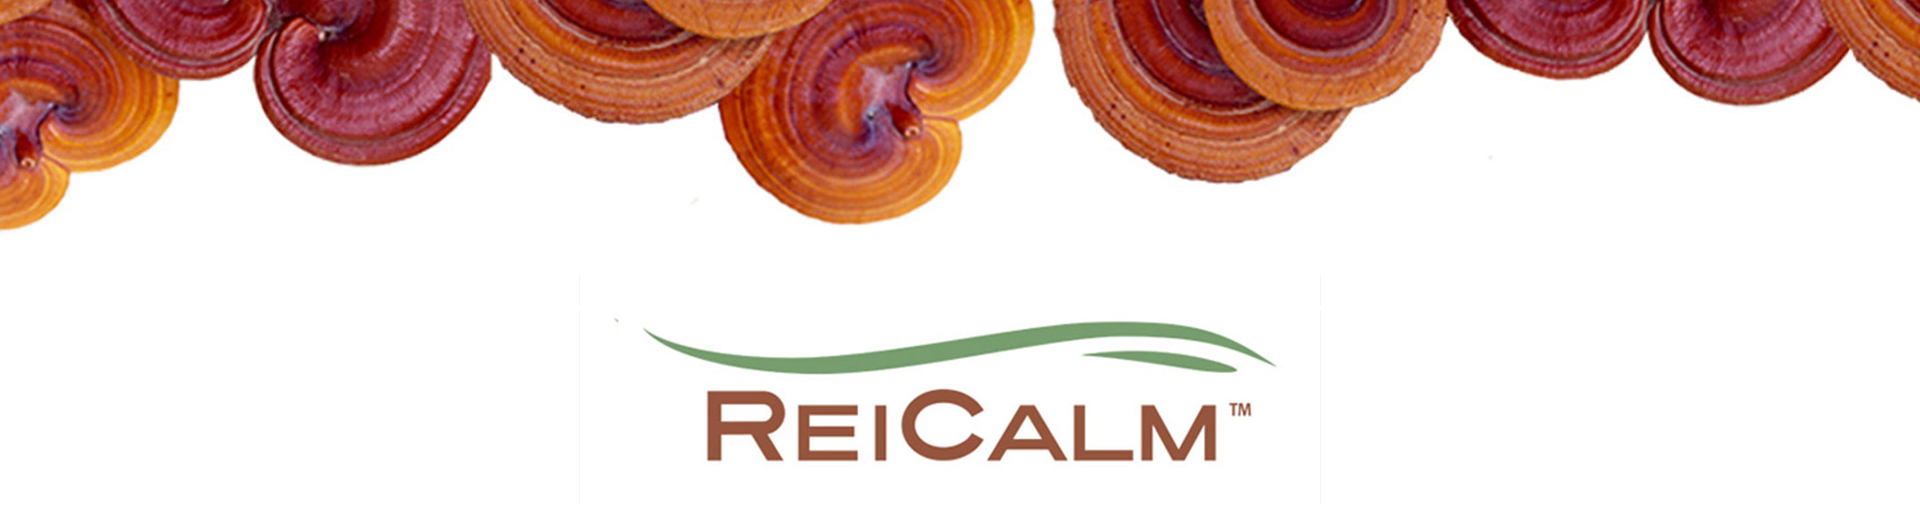 ReiCalm banner